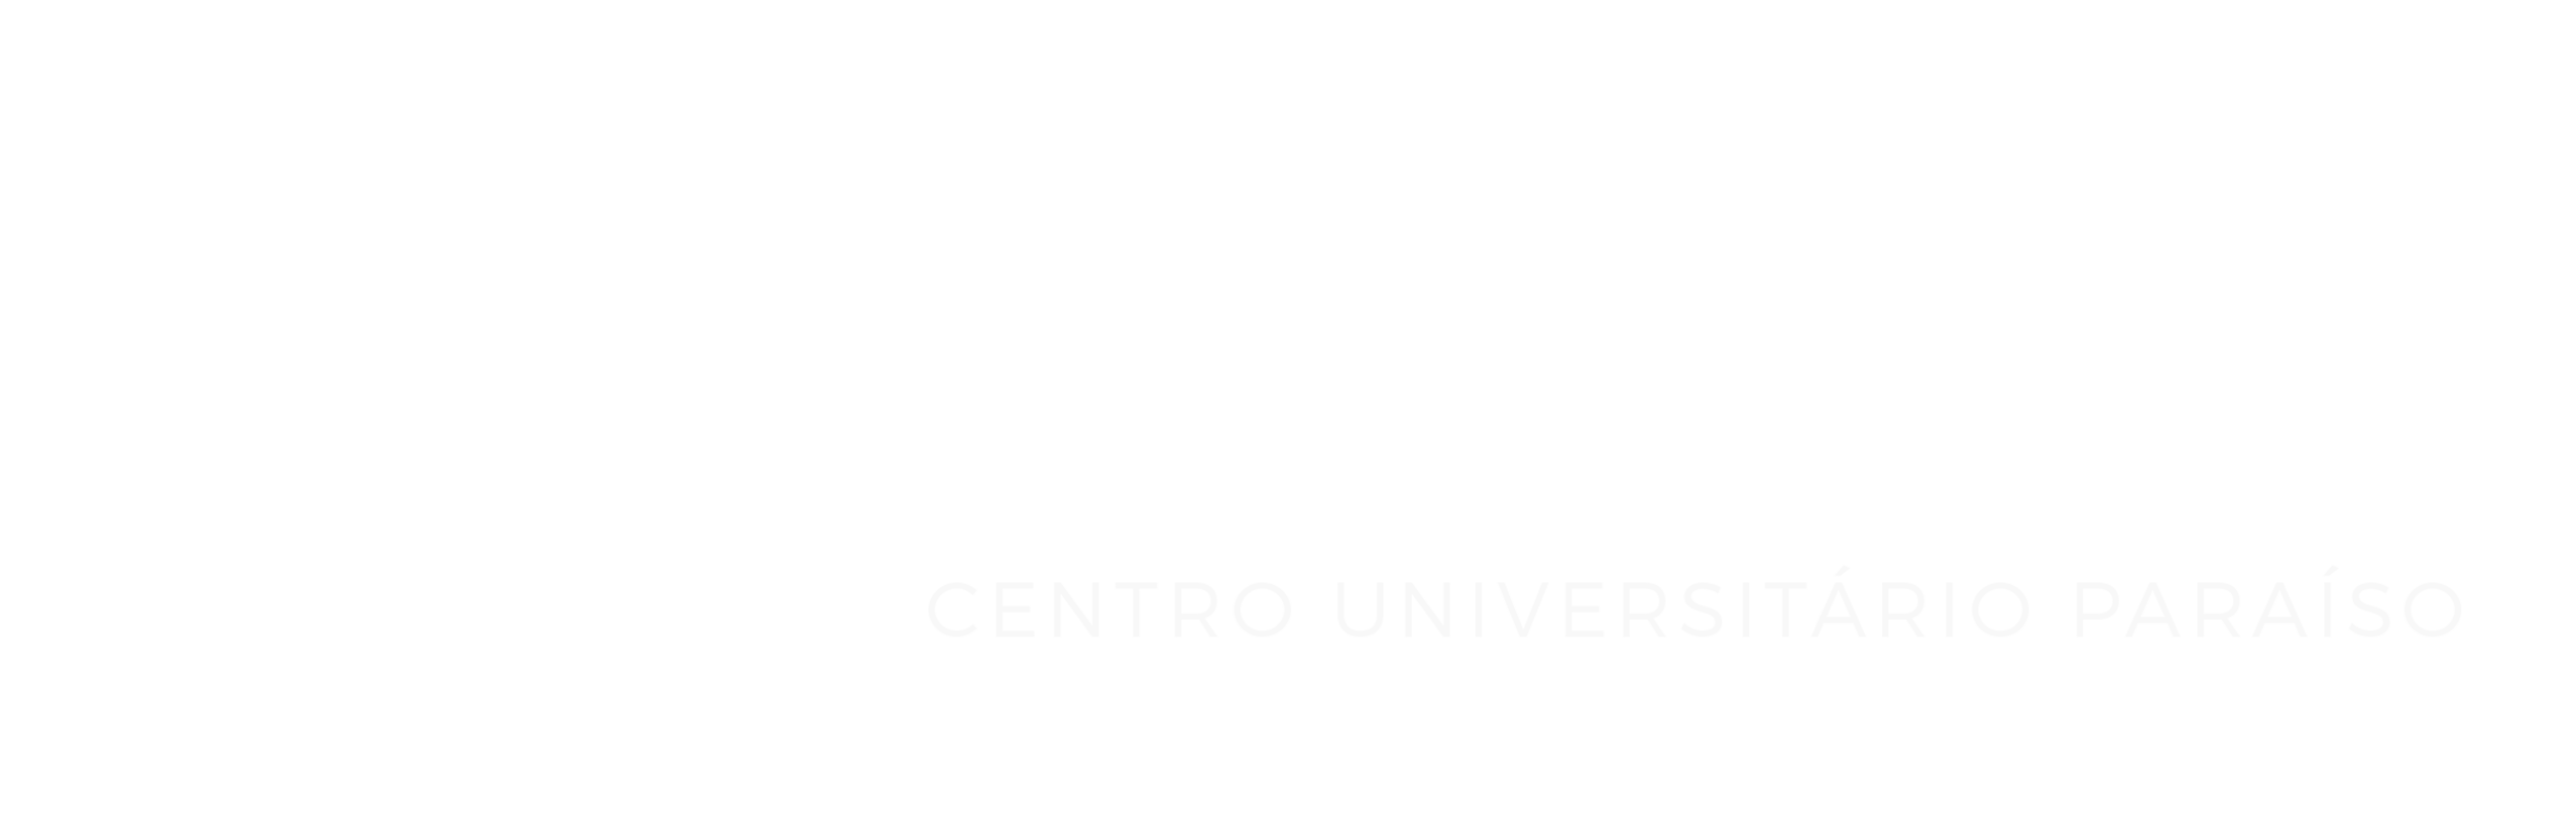 UniFAP - Centro Universitário Paraíso – Tutorial de recuperação de